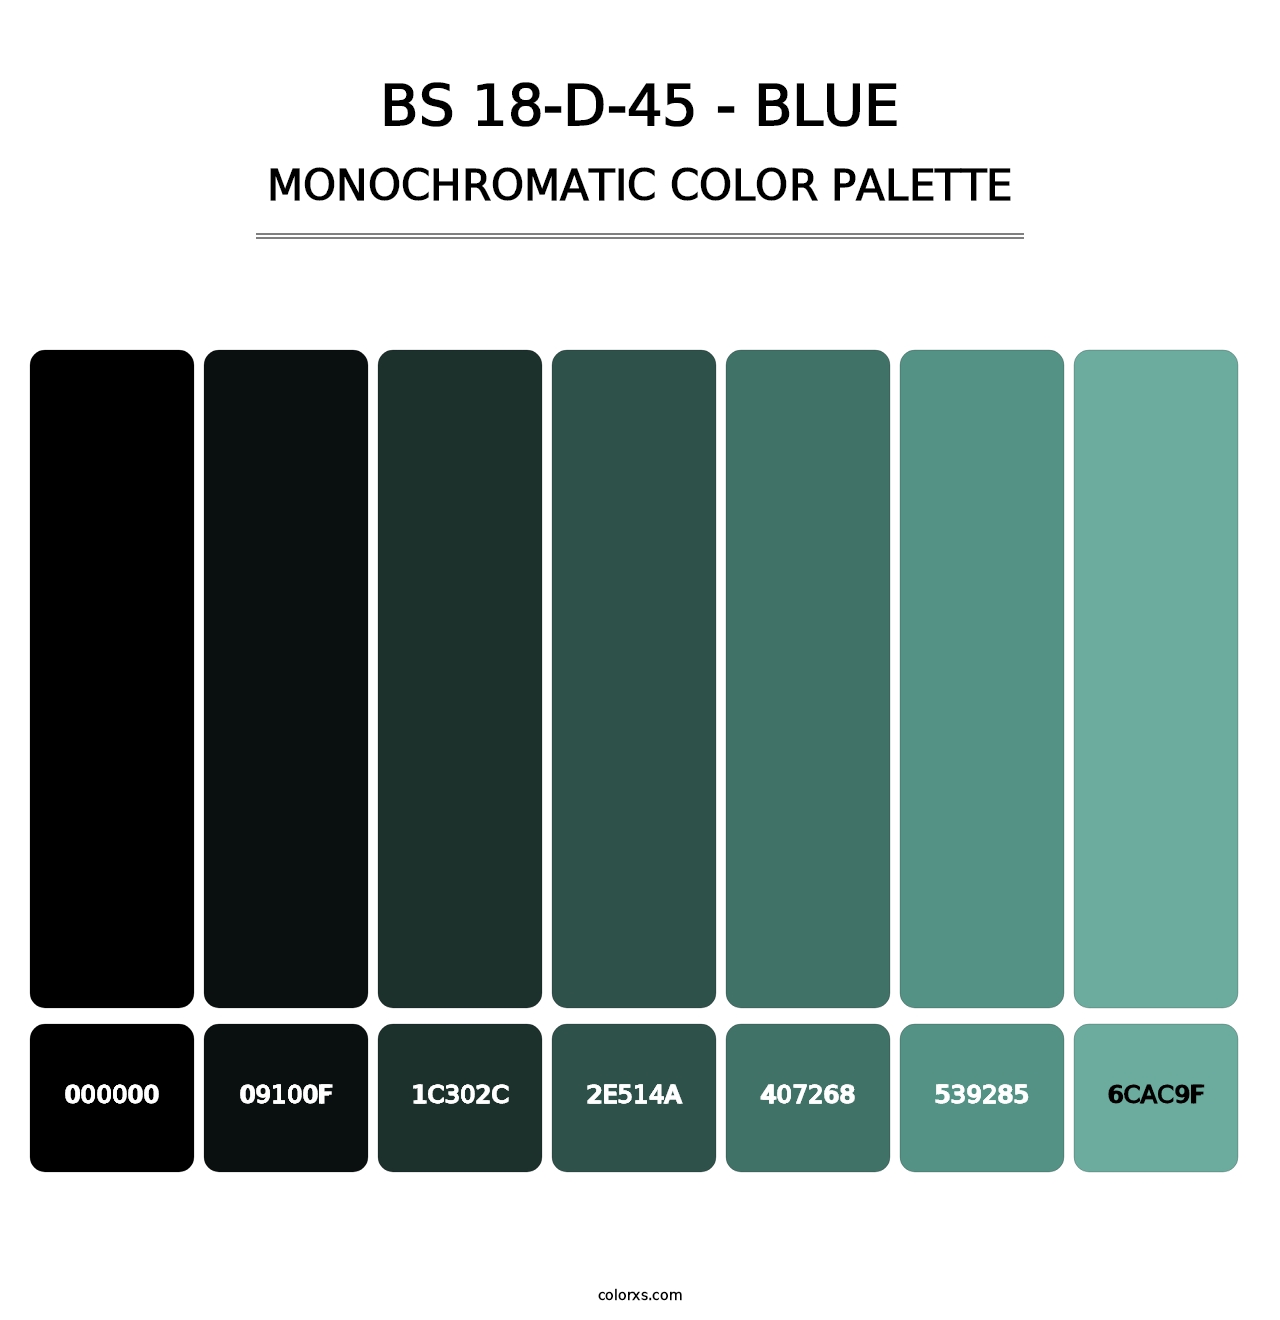 BS 18-D-45 - Blue - Monochromatic Color Palette